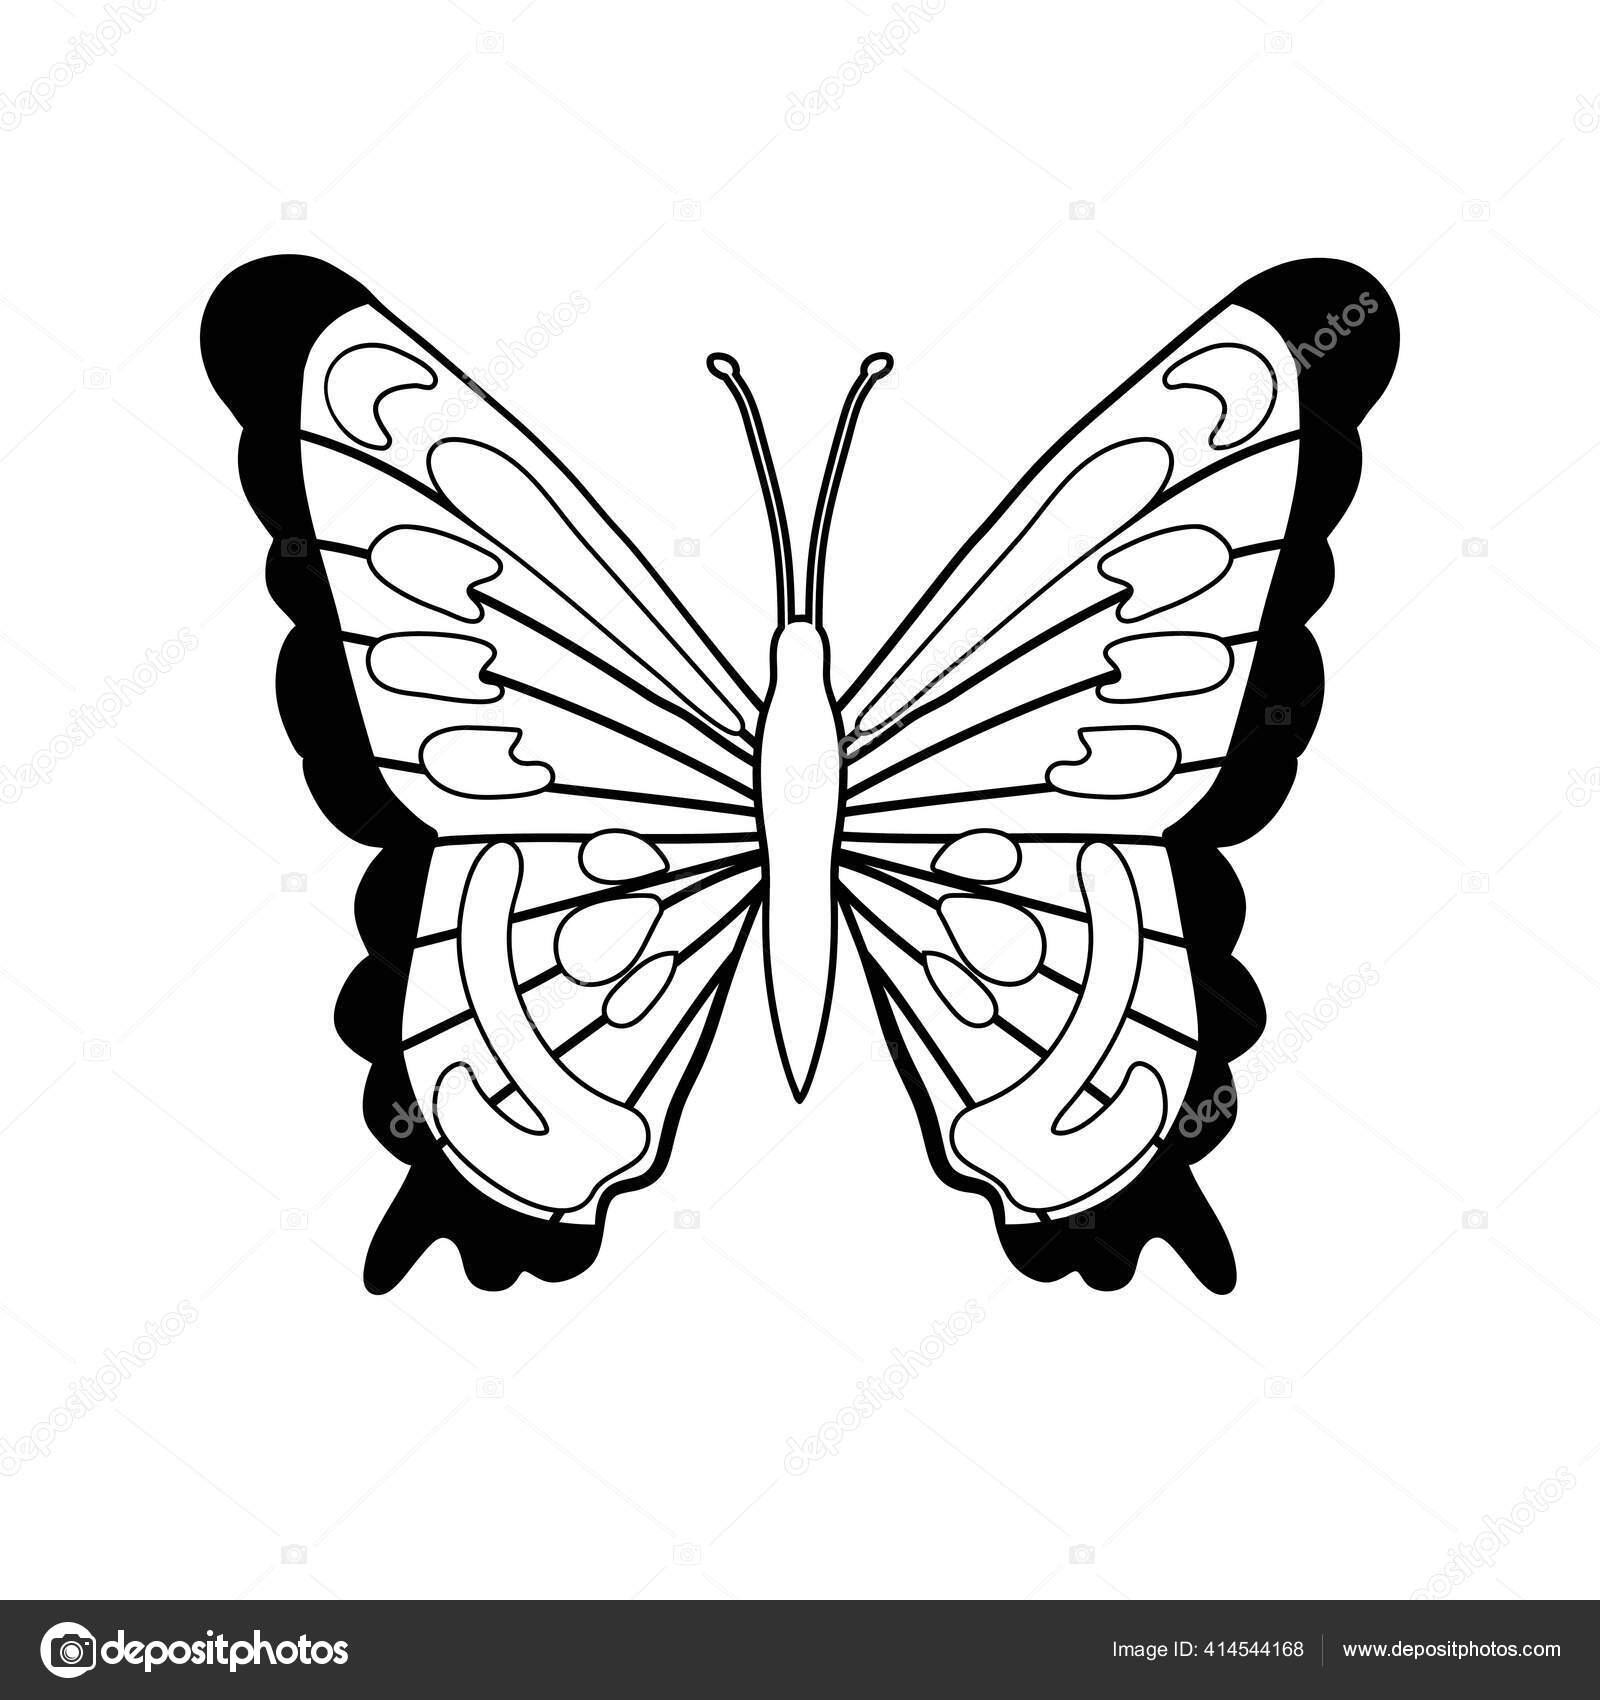 Bướm hình xăm: Hình xăm bướm tượng trưng cho sự thay đổi và chuyển động. Nếu bạn đang cần một sự thay đổi trong cuộc sống, hãy xem qua hình xăm tuyệt đẹp và phong cách này để tìm nguồn cảm hứng.